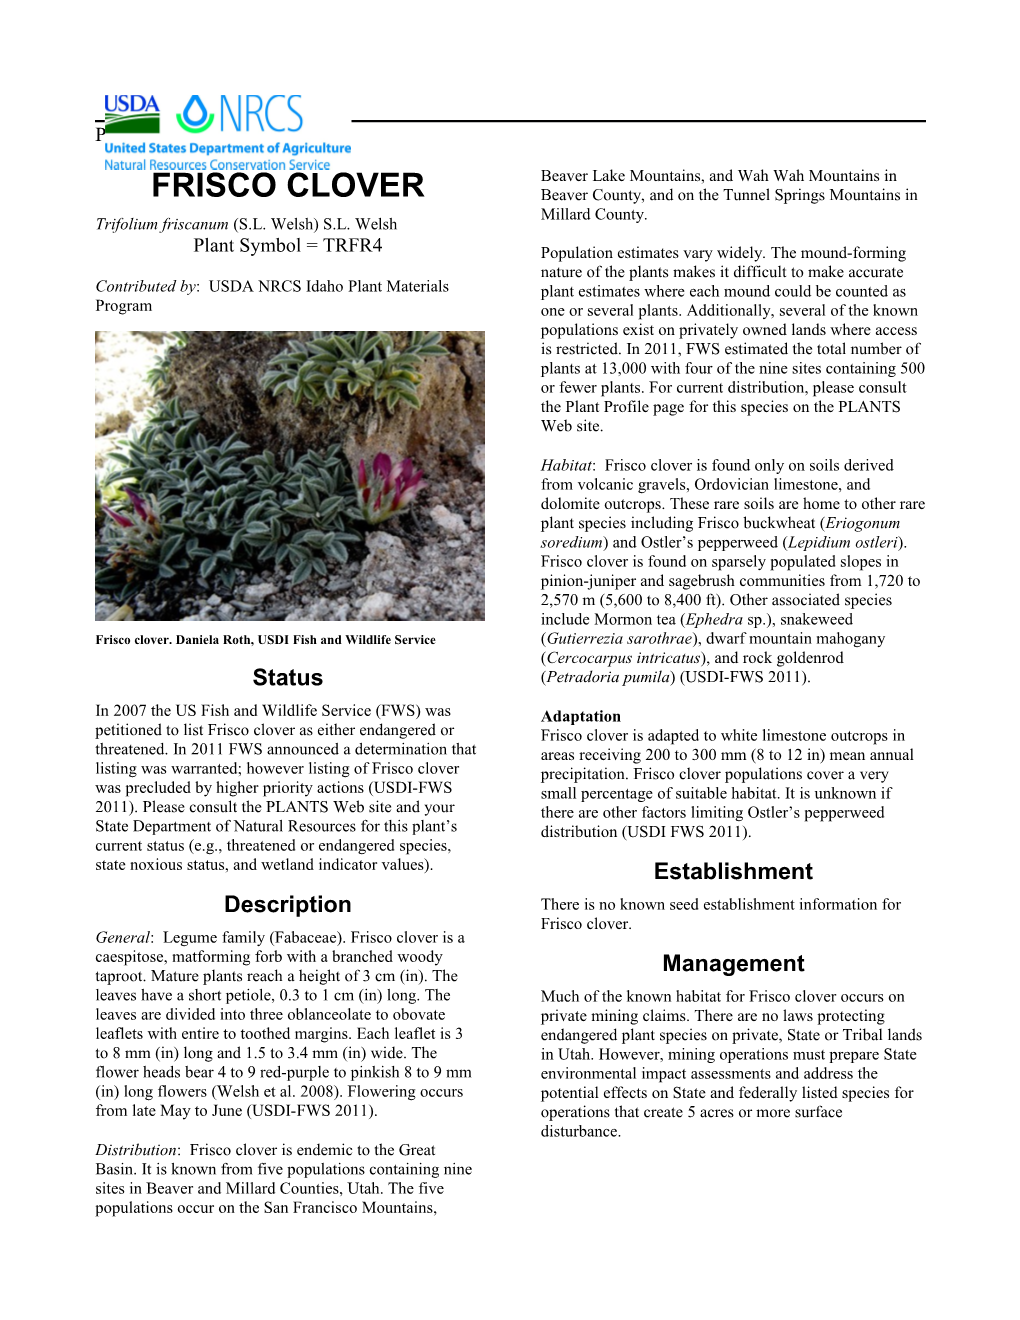 Plant Guide for Frisco Clover (Trifolium Friscanum)